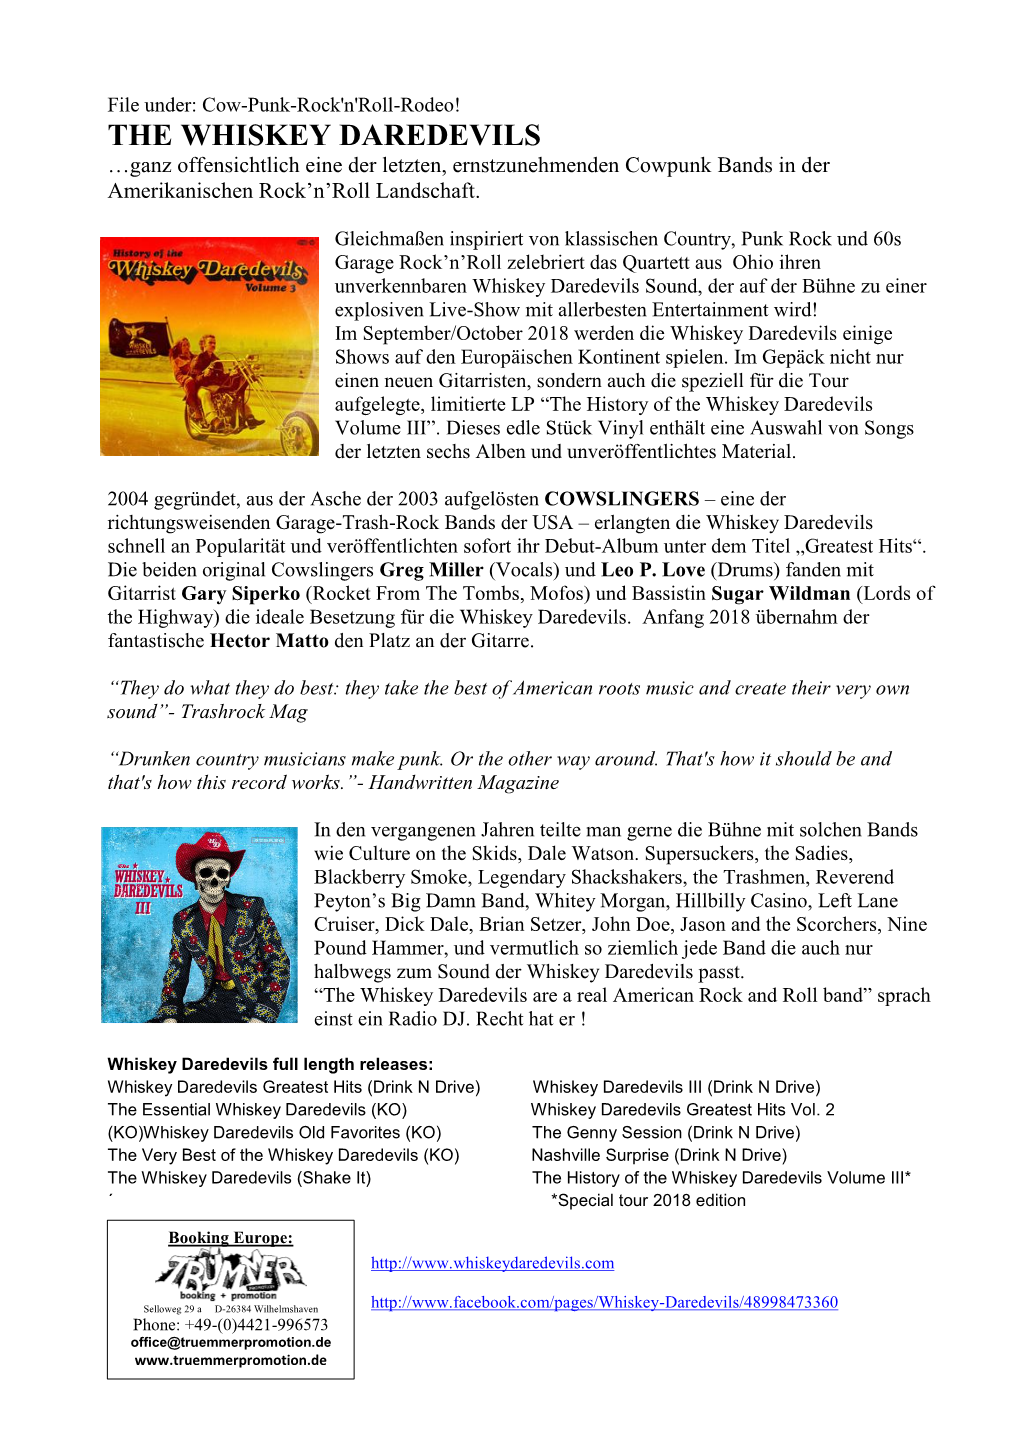 THE WHISKEY DAREDEVILS …Ganz Offensichtlich Eine Der Letzten, Ernstzunehmenden Cowpunk Bands in Der Amerikanischen Rock’N’Roll Landschaft